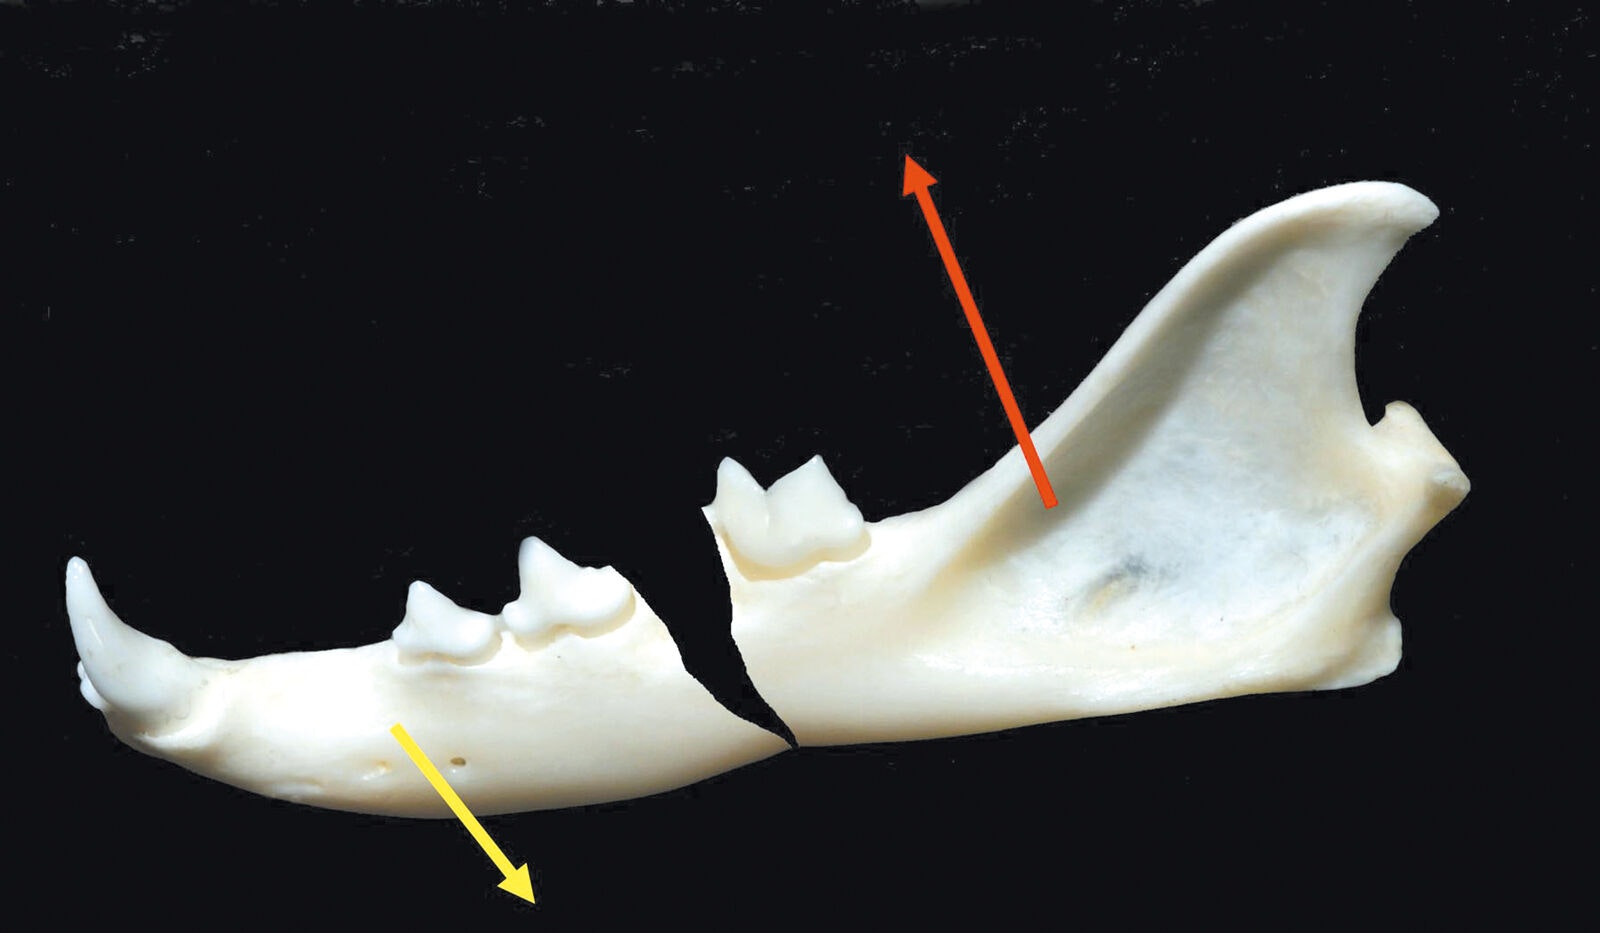 Figura 3. Fractura del cuerpo mandibular; la flecha amarilla muestra la dirección en la que tiran los músculos que abren la mandíbula; la flecha roja muestra la dirección en la que tiran los músculos que cierran la mandíbula. Apertura de la línea de fractura y mal alineamiento 